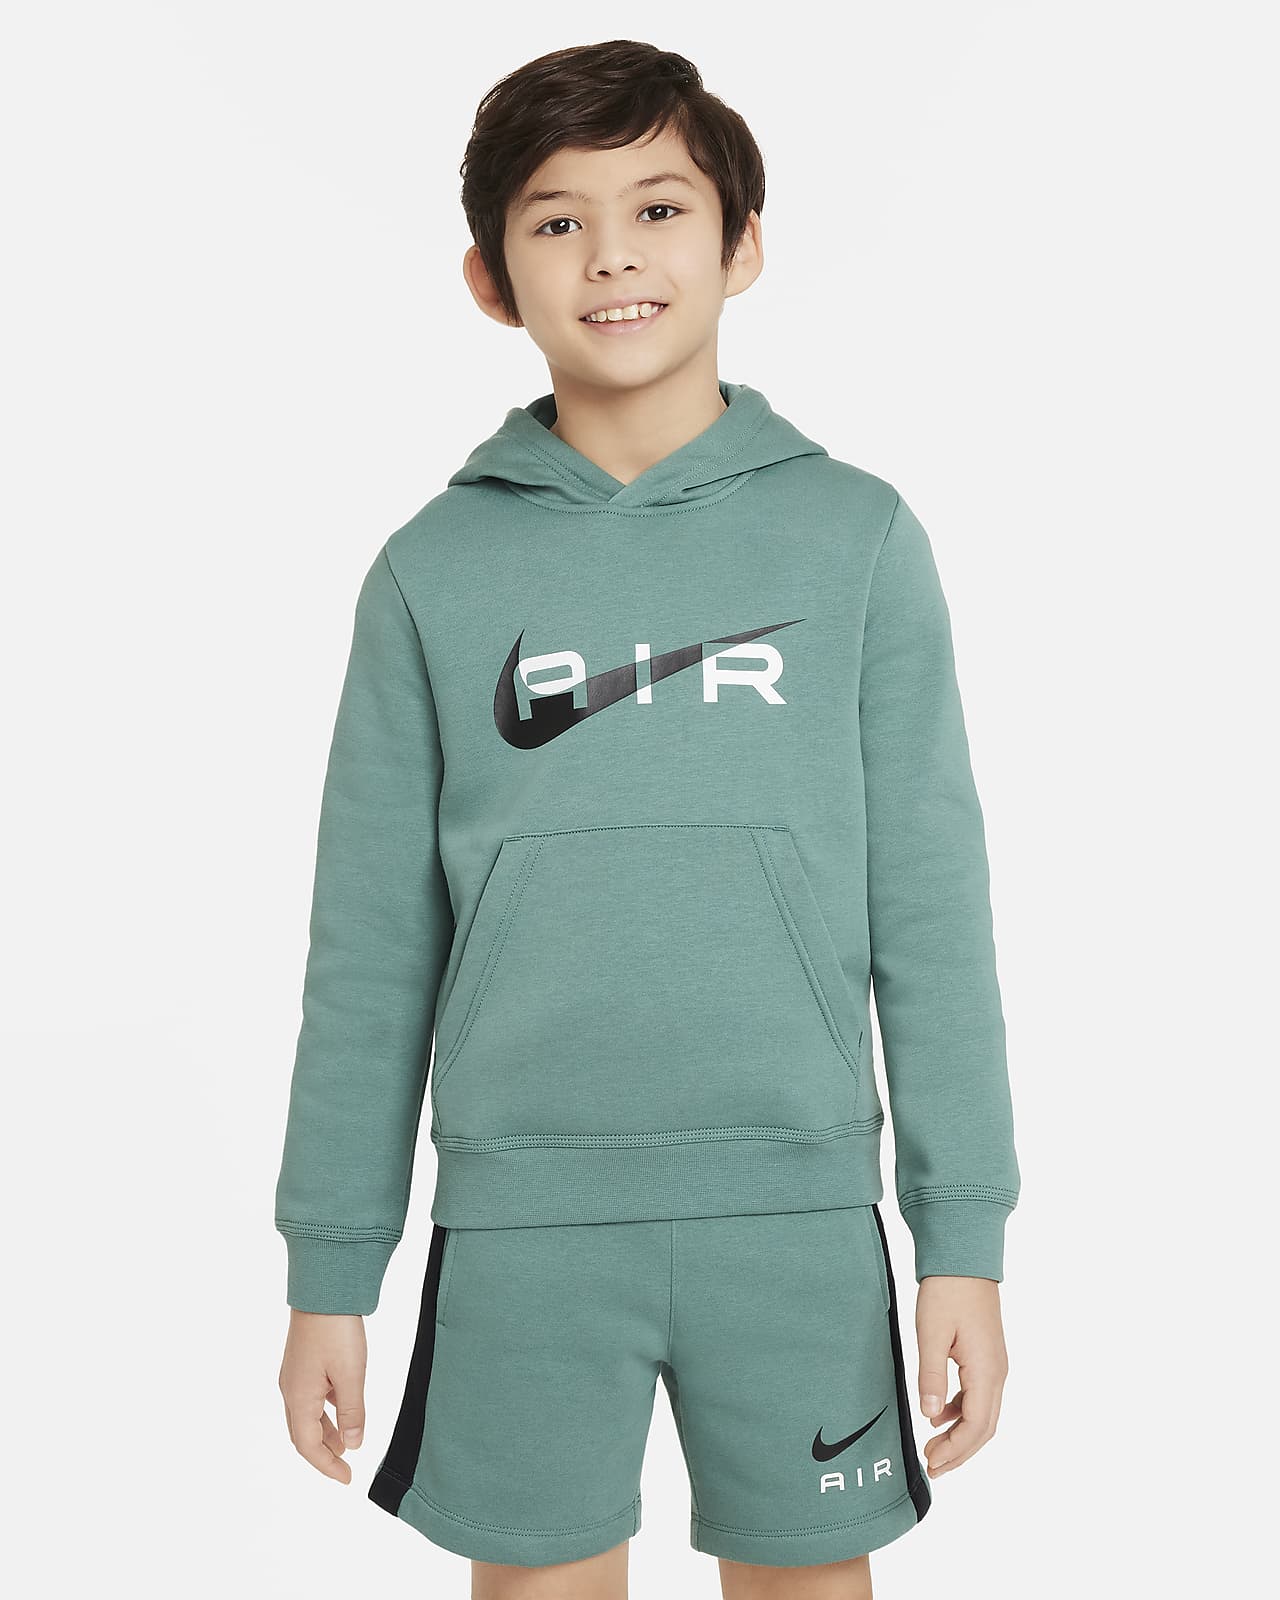 Flísová mikina Nike Air s kapucí pro větší děti